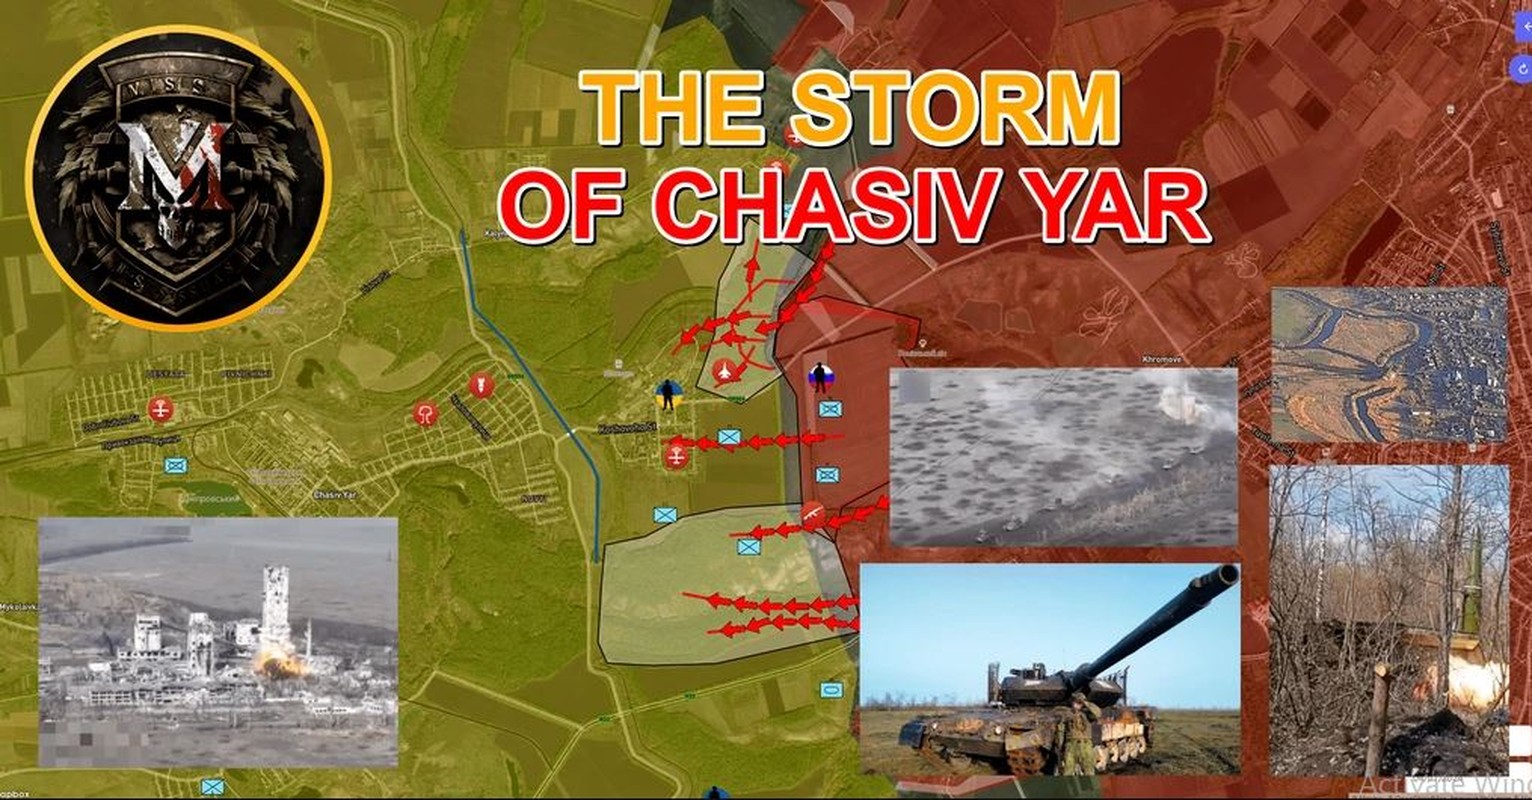 View - 	Quân Nga sử dụng chiến thuật nào để đánh cứ điểm Chasov Yar